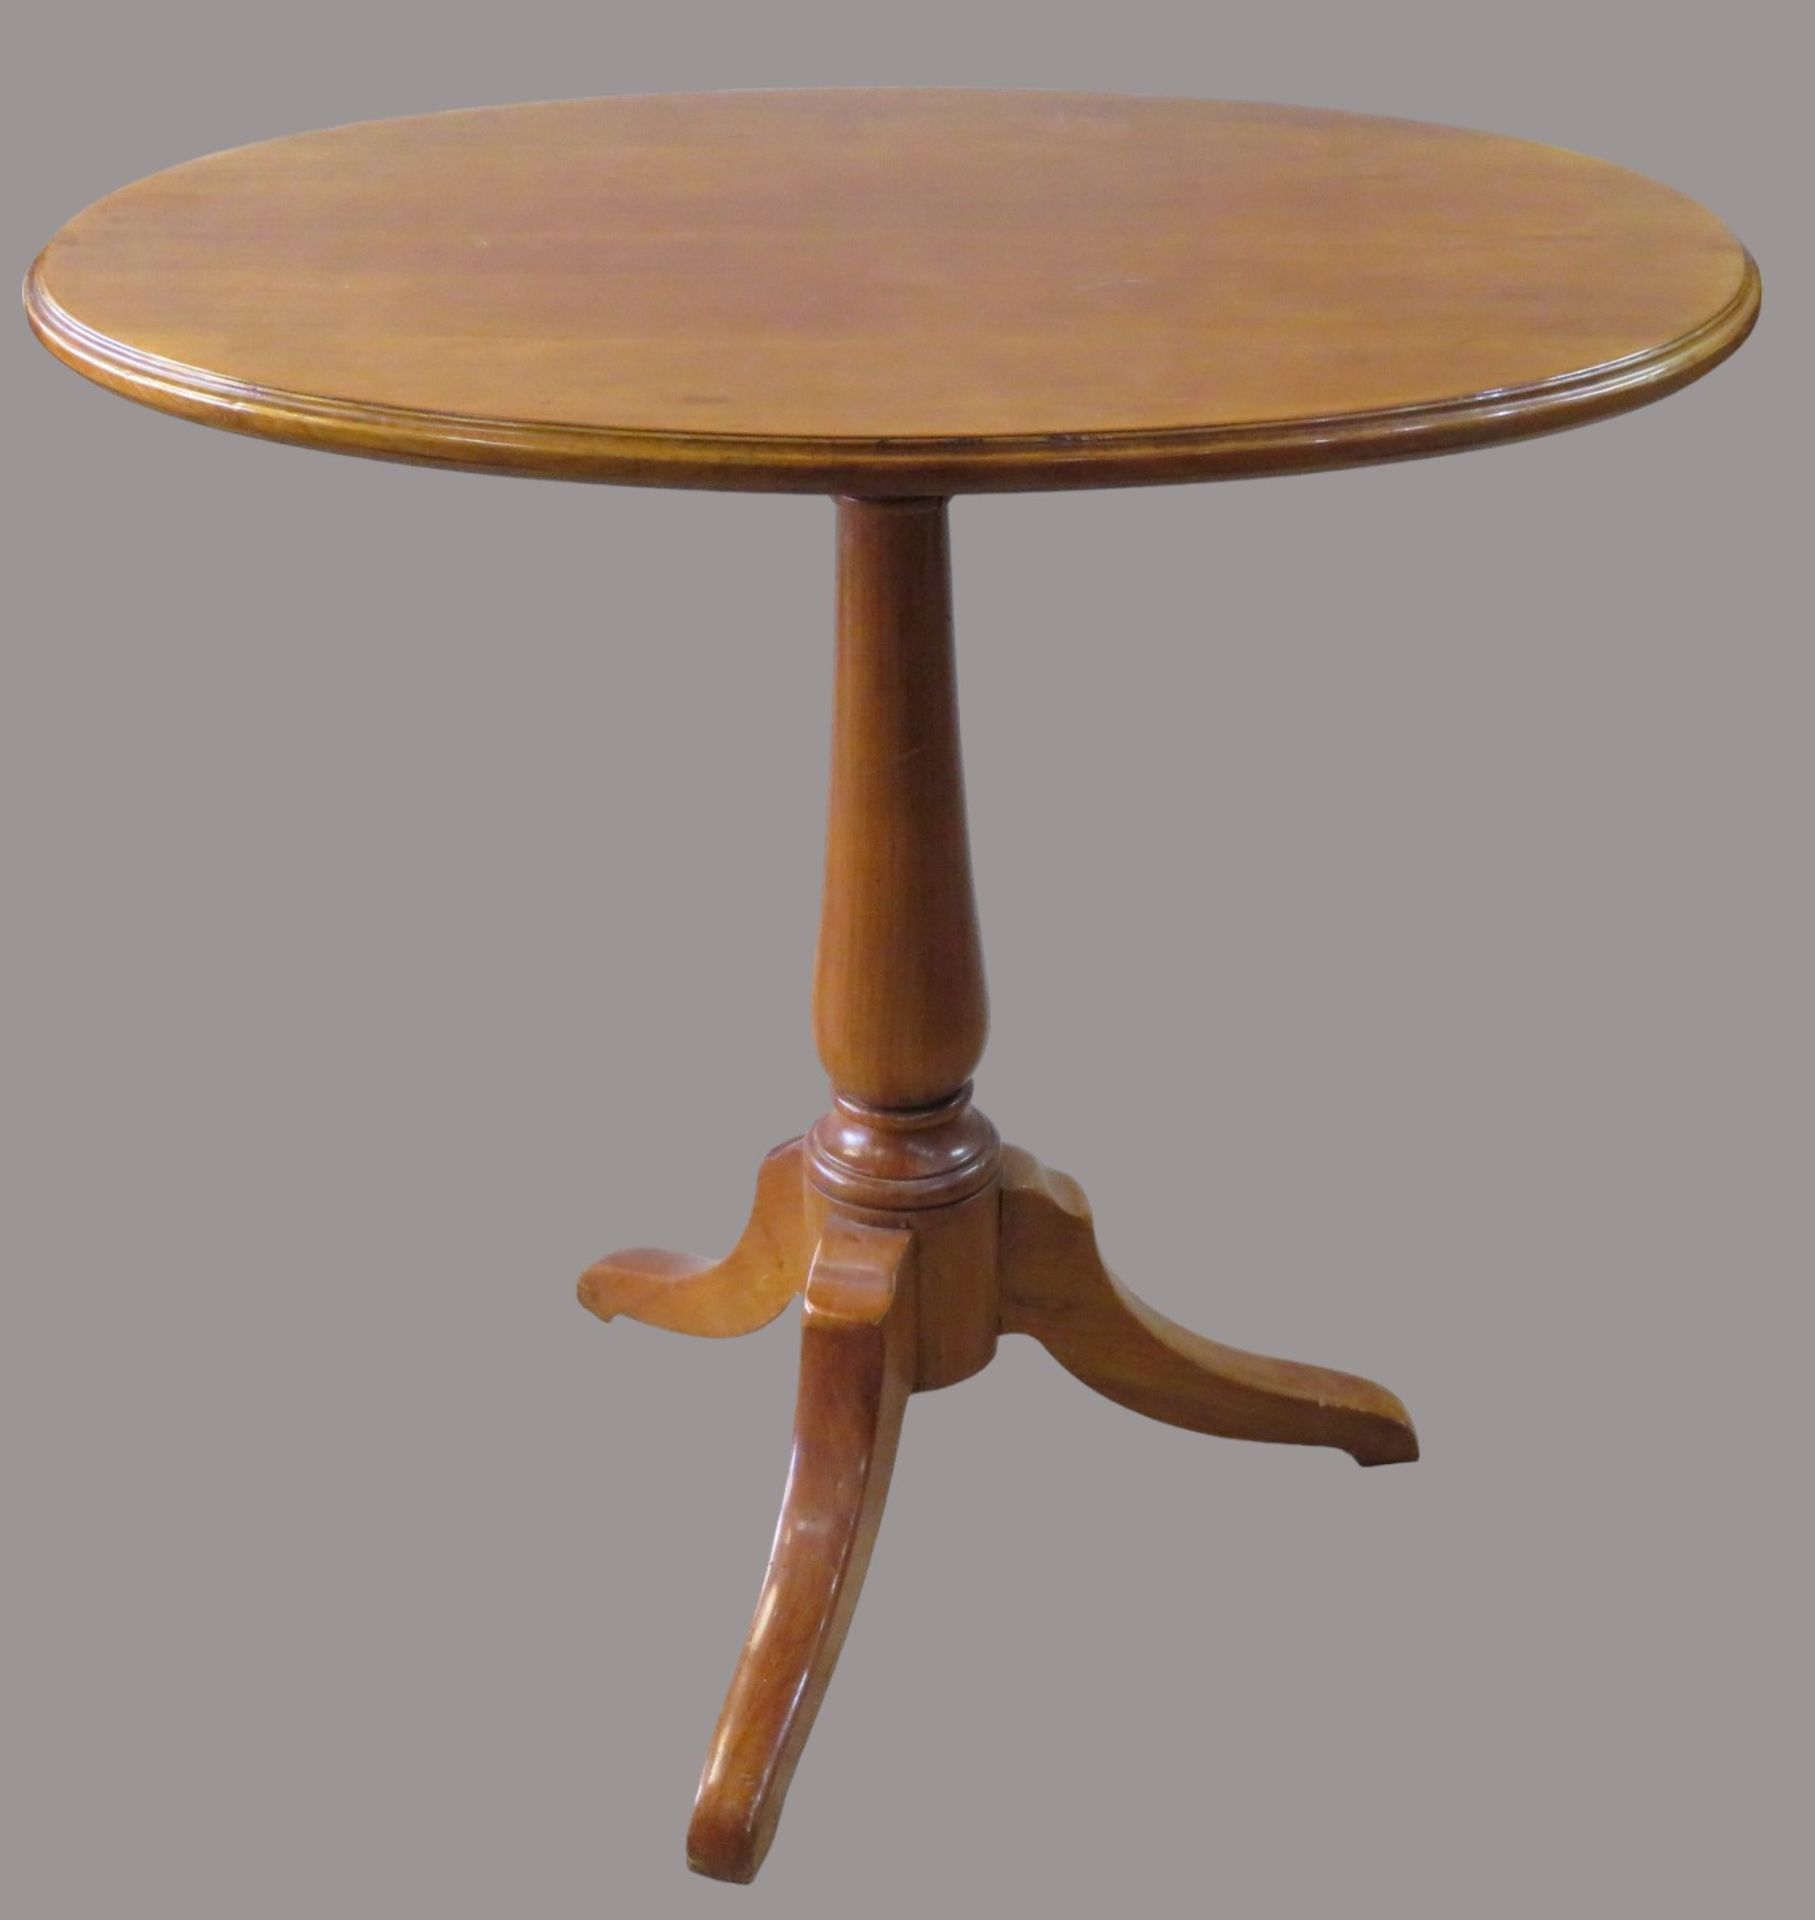 Beistelltisch, Louis Philippe-Stil, ovale Platte, nussbaumfarben, Dreifuß, Gebrauchsspuren, 70 x 76 - Image 2 of 3